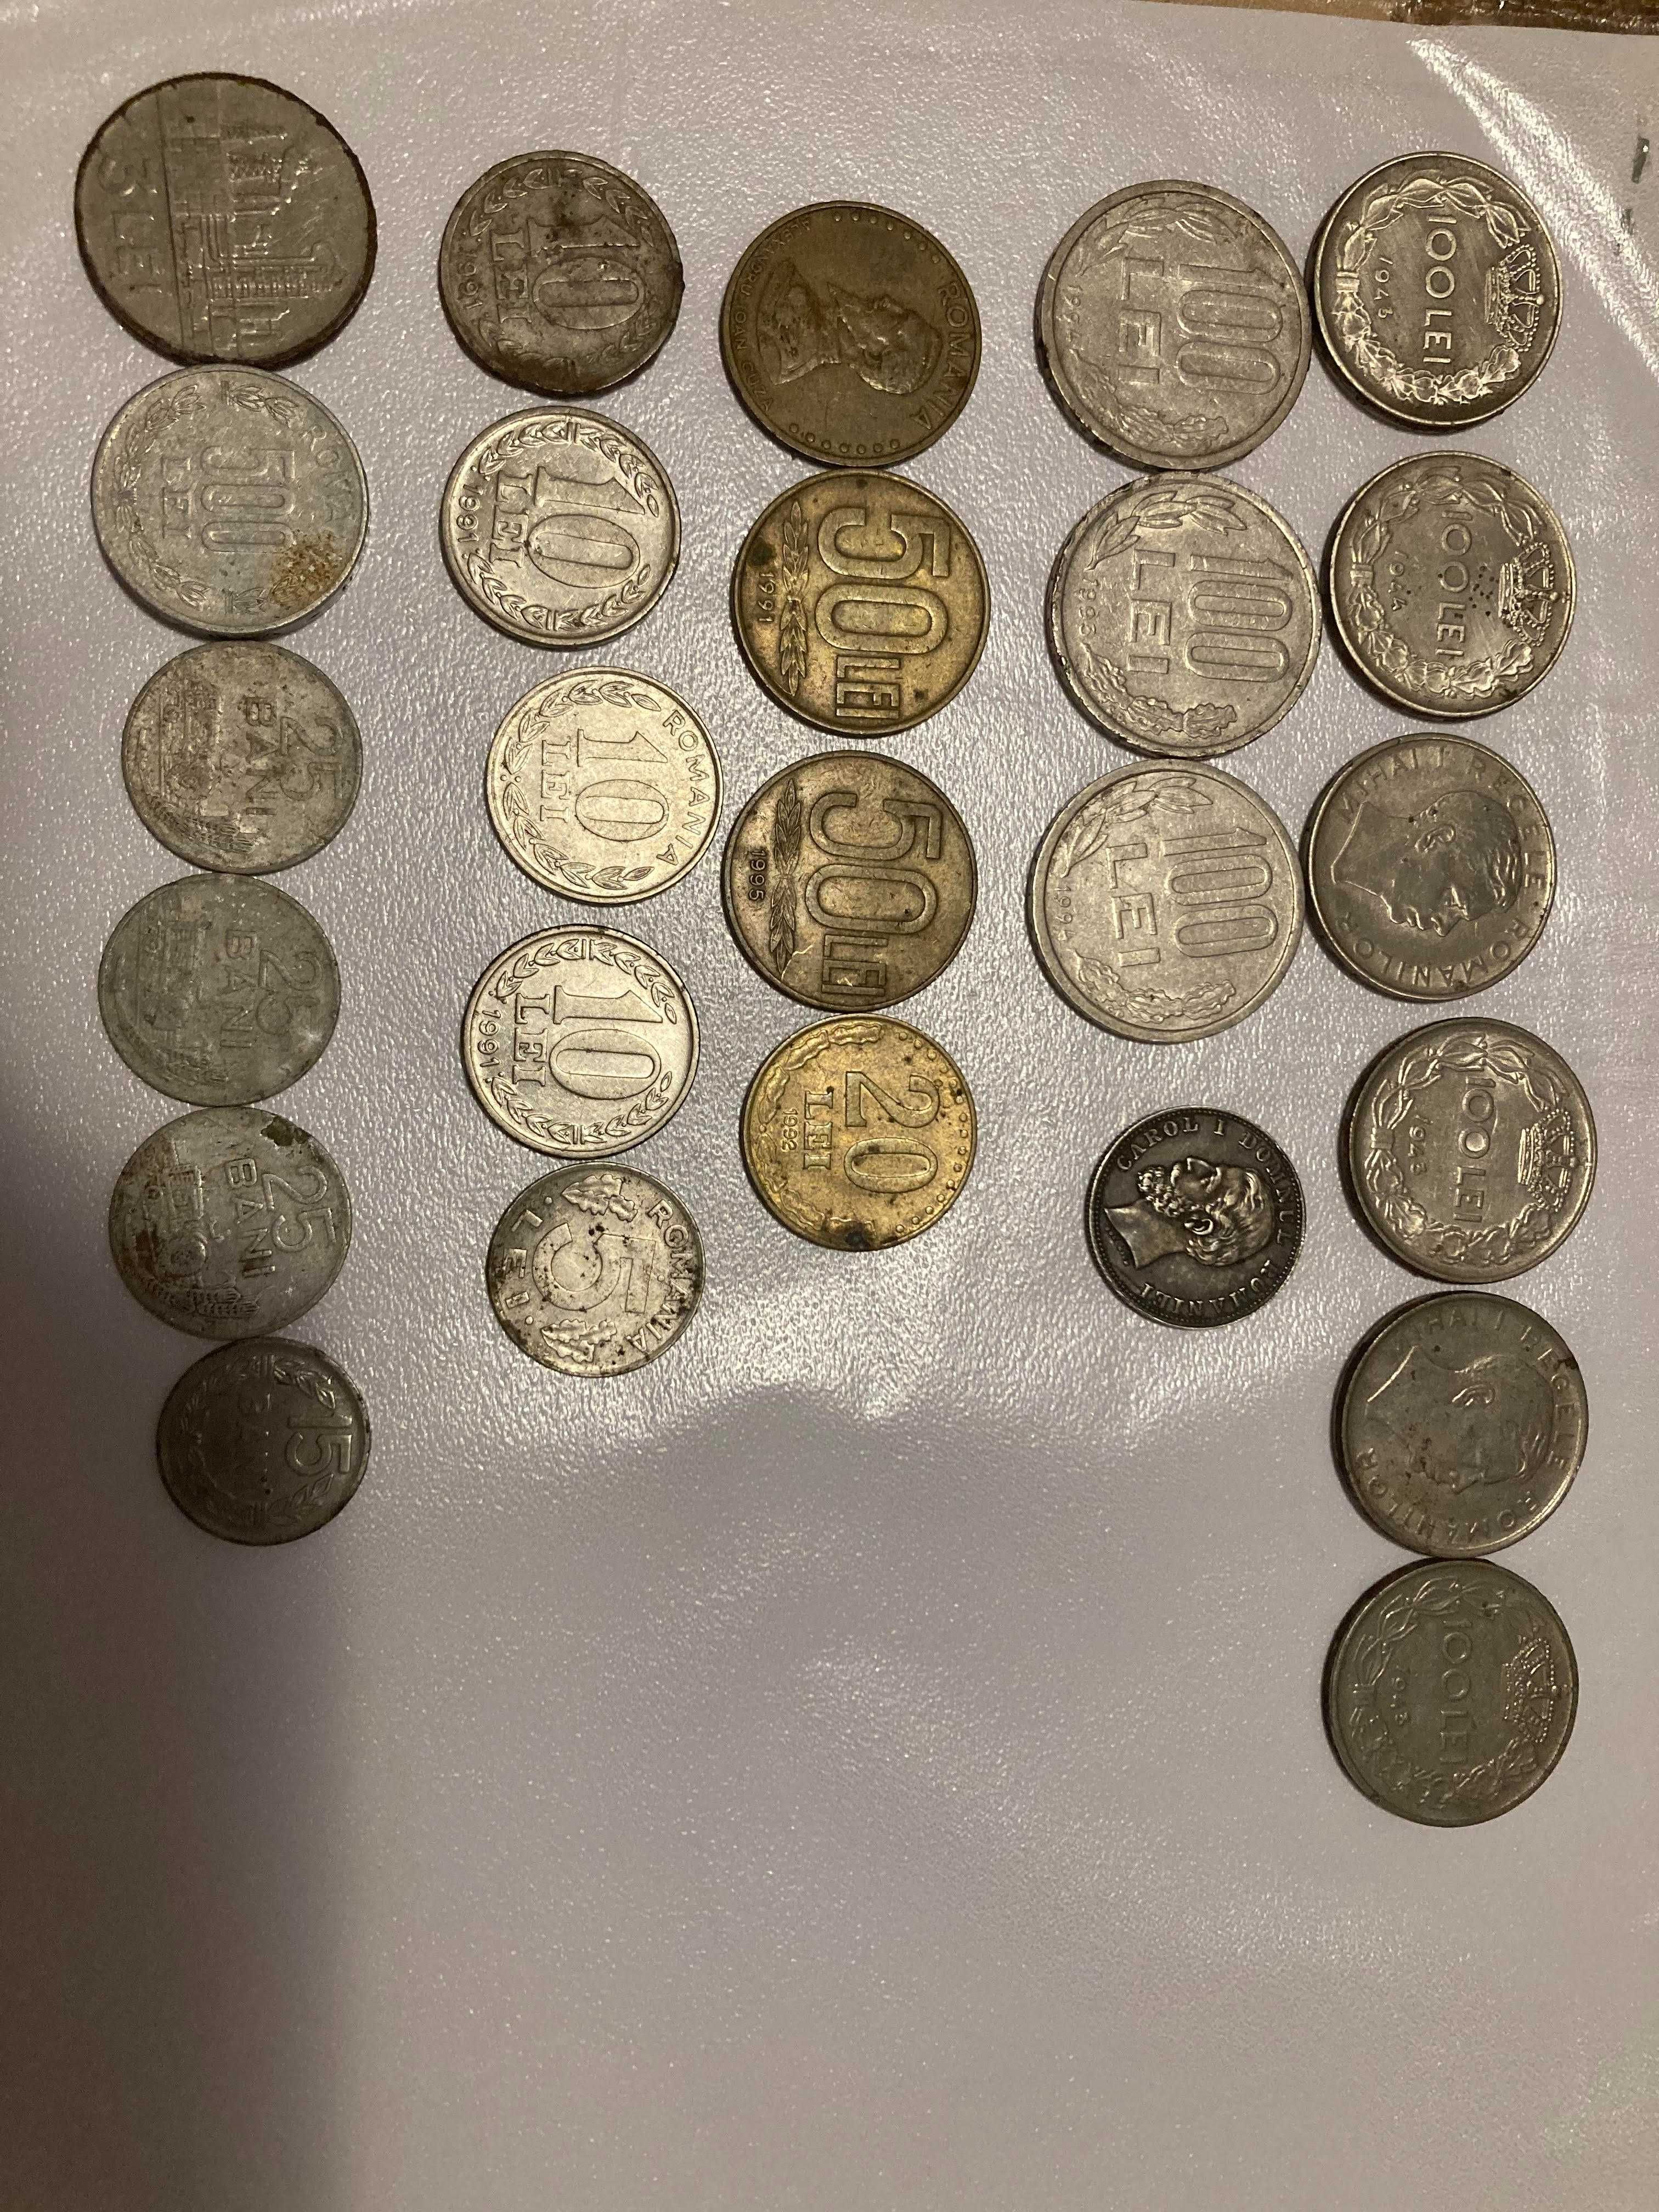 Vand monezi vechi de colectie